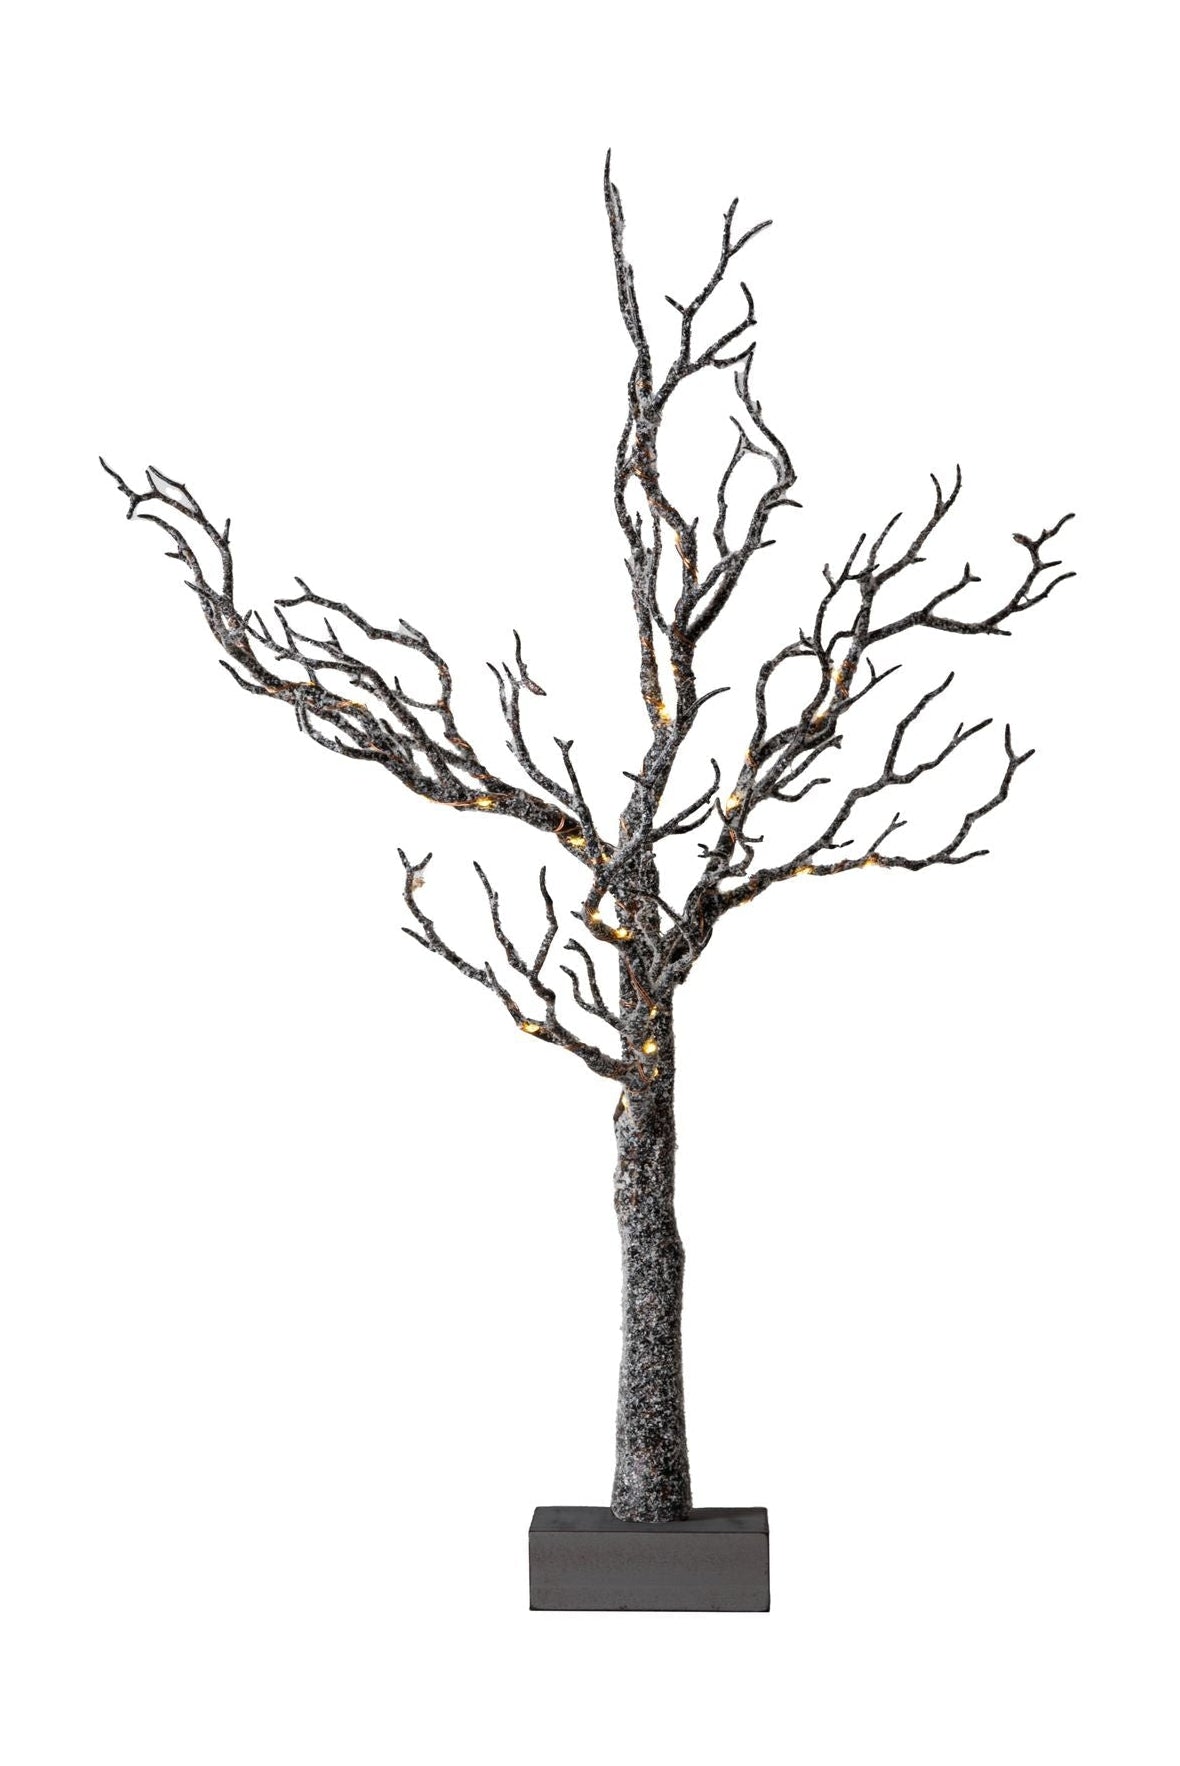 Sirius Tora Tree 0,6m, brun / neige